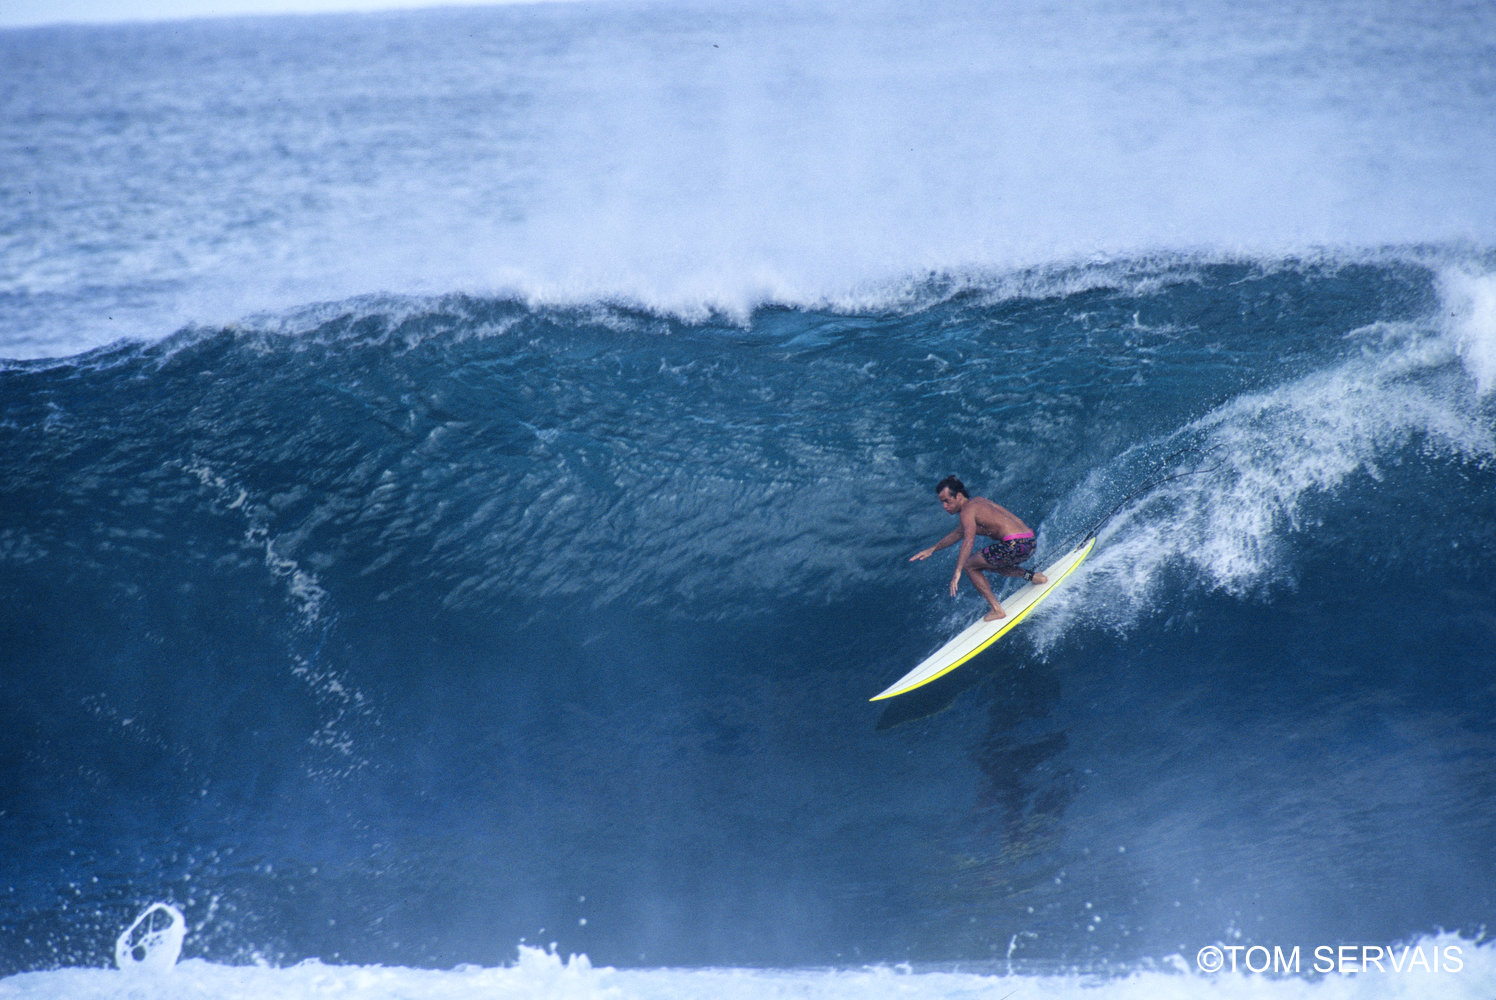 3 x World Surfing Champion, Tom Curren 